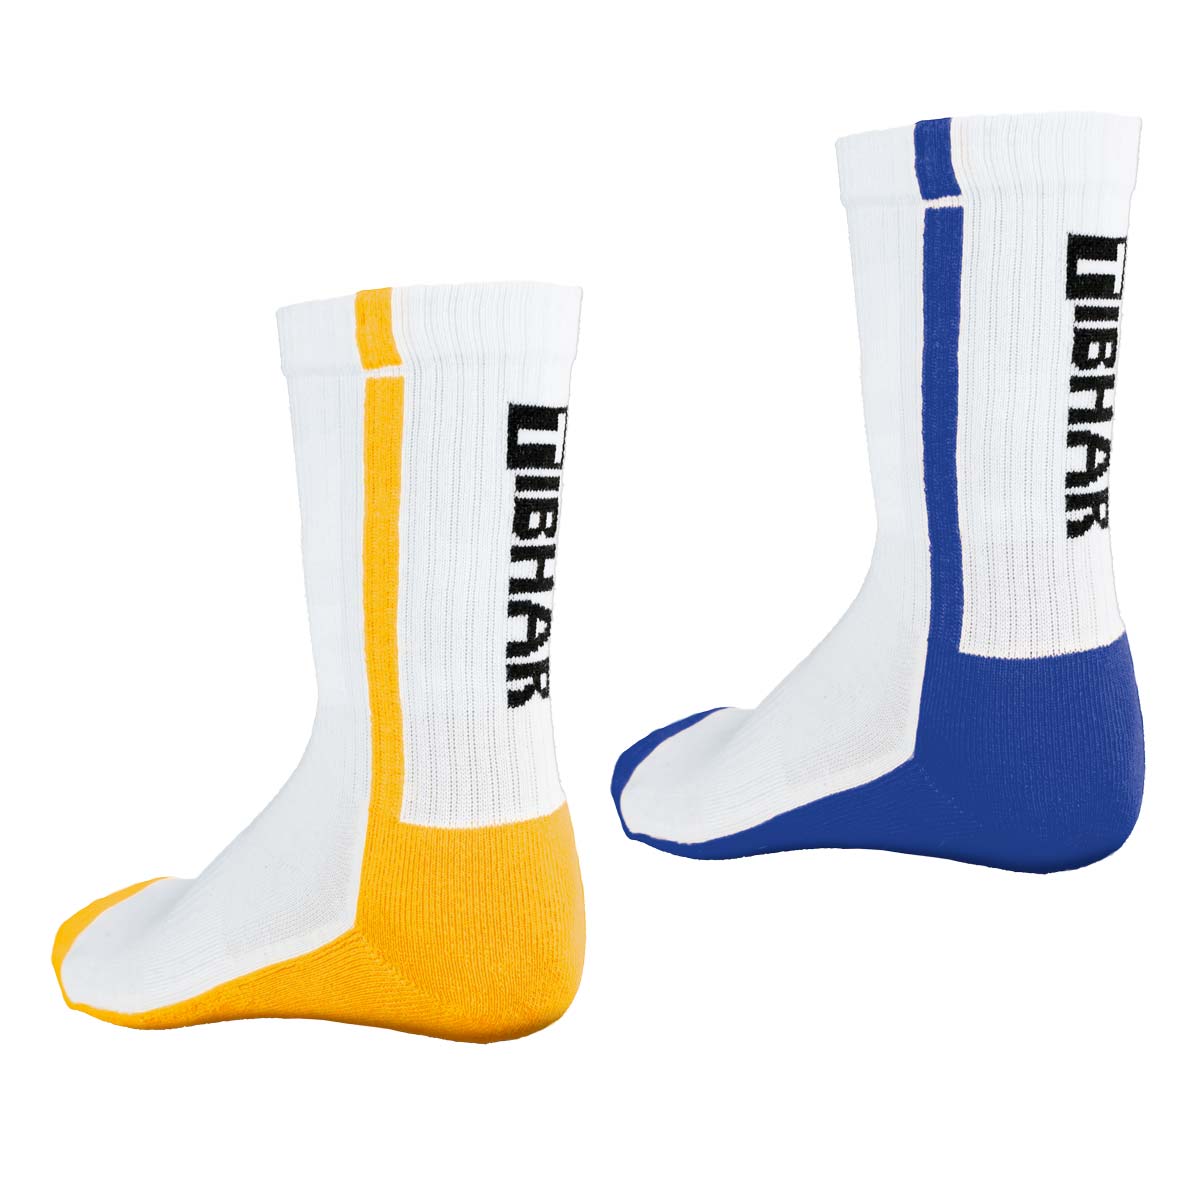 TIBHAR Socke Pro